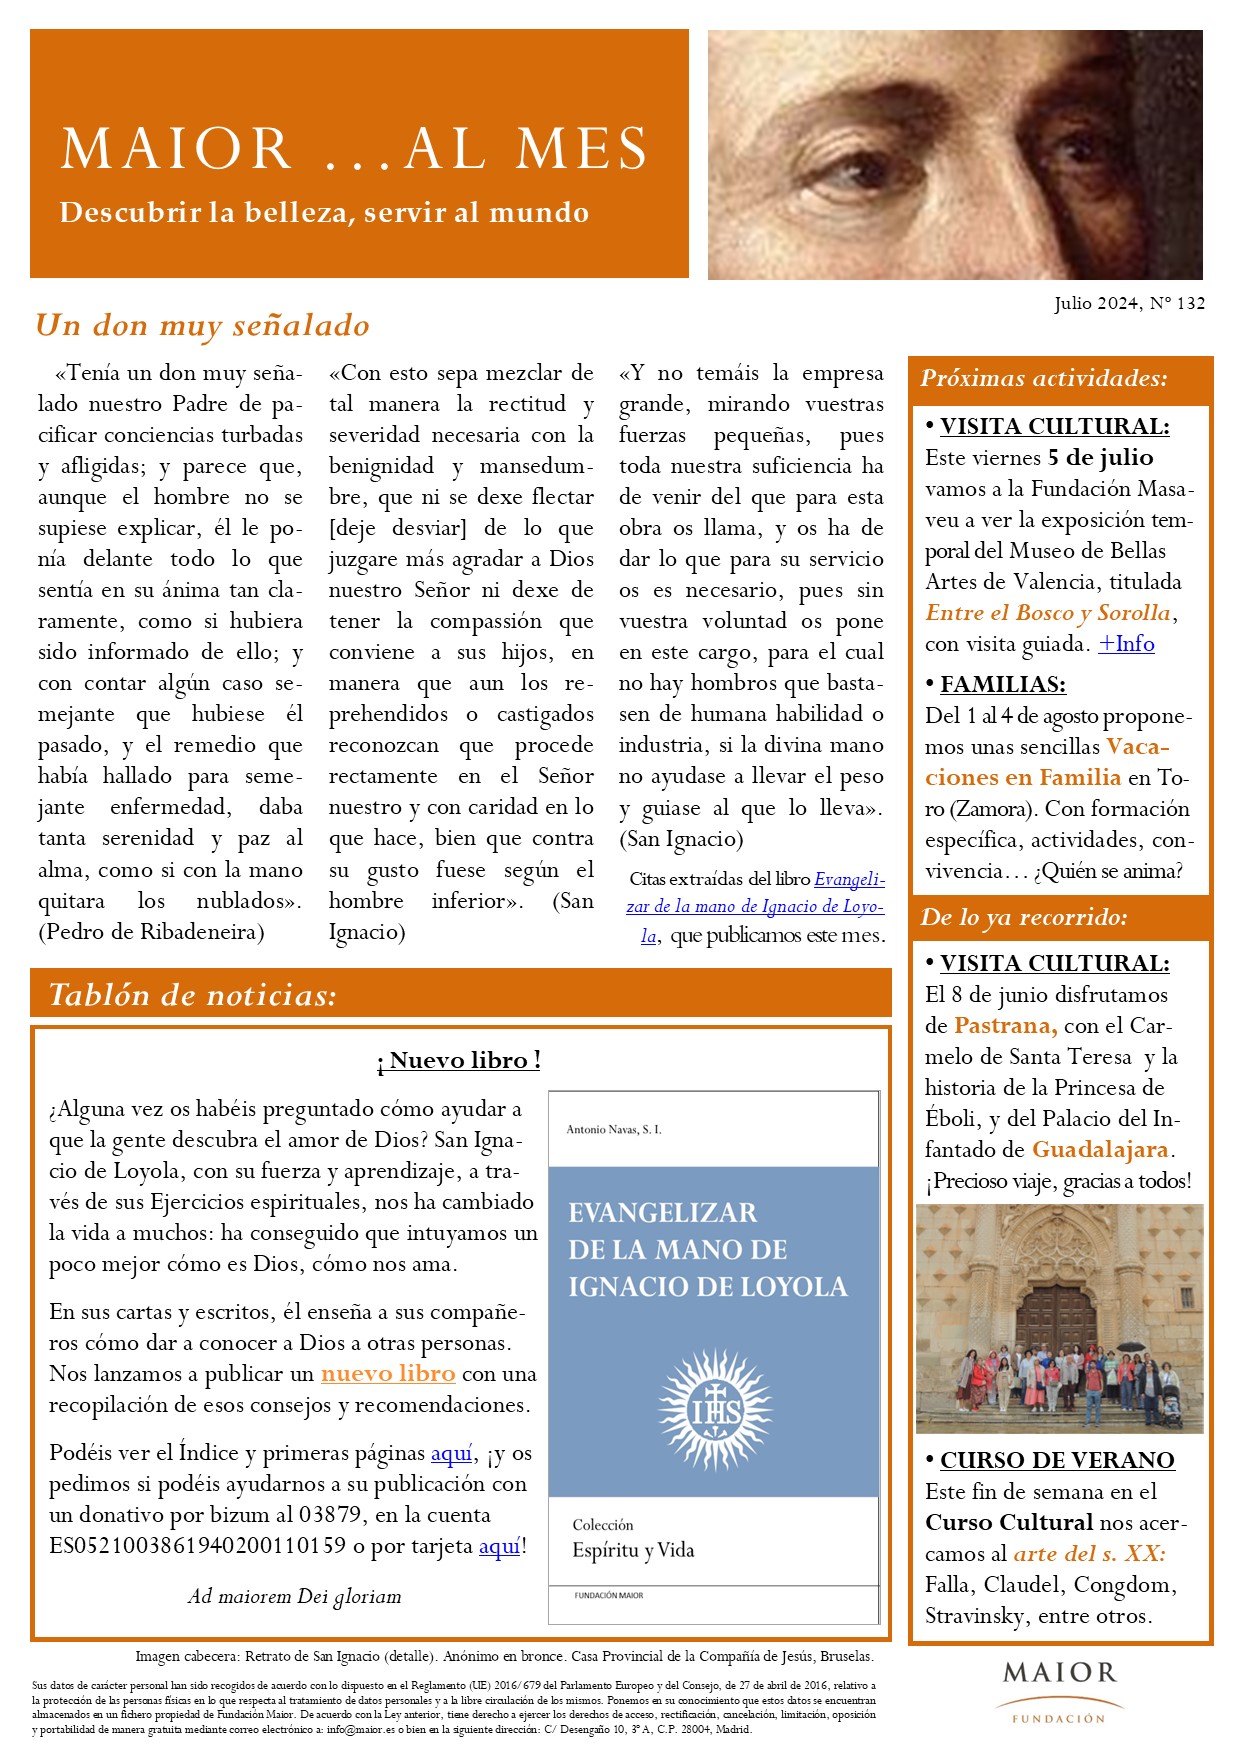 Boletín mensual de noticias y actividades de la Fundación Maior. Edición de julio 2024